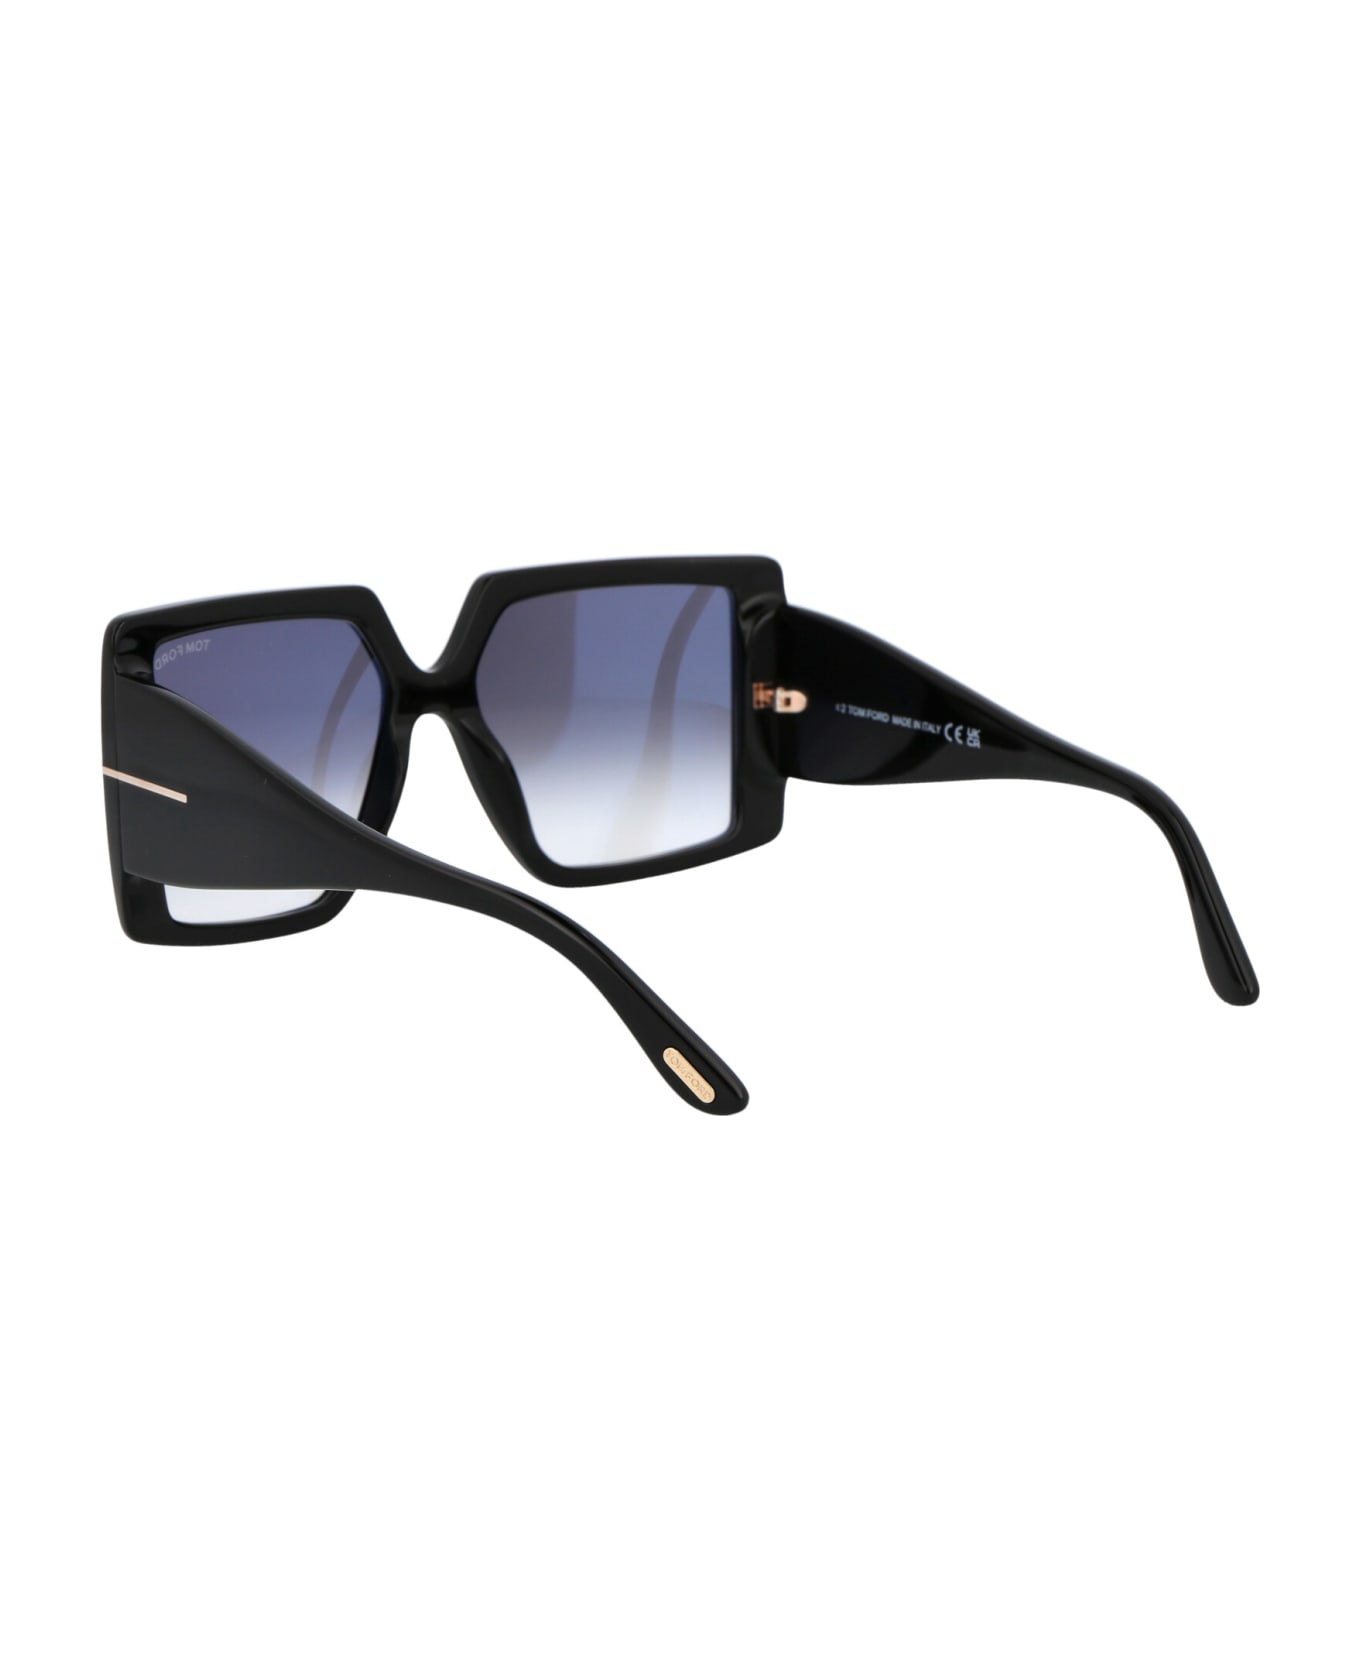 Tom Ford Eyewear Quinn Sunglasses - 01B Nero Lucido / Fumo Grad